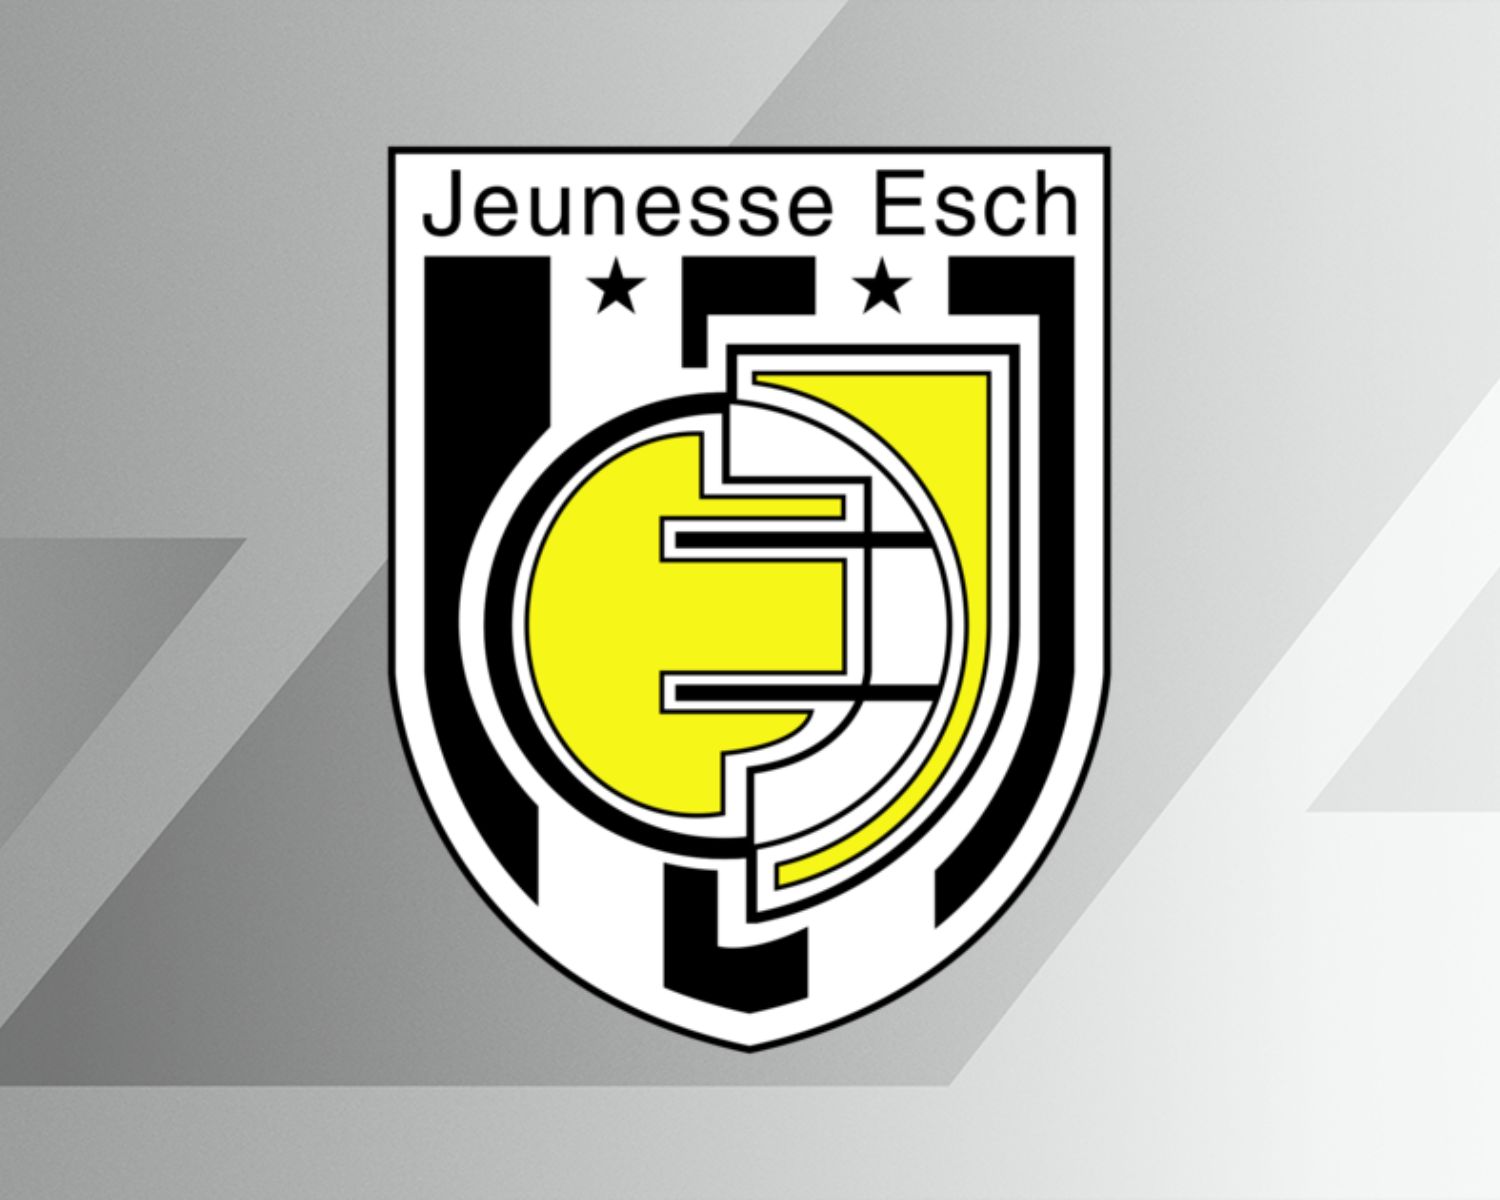 jeunesse-esch-25-football-club-facts